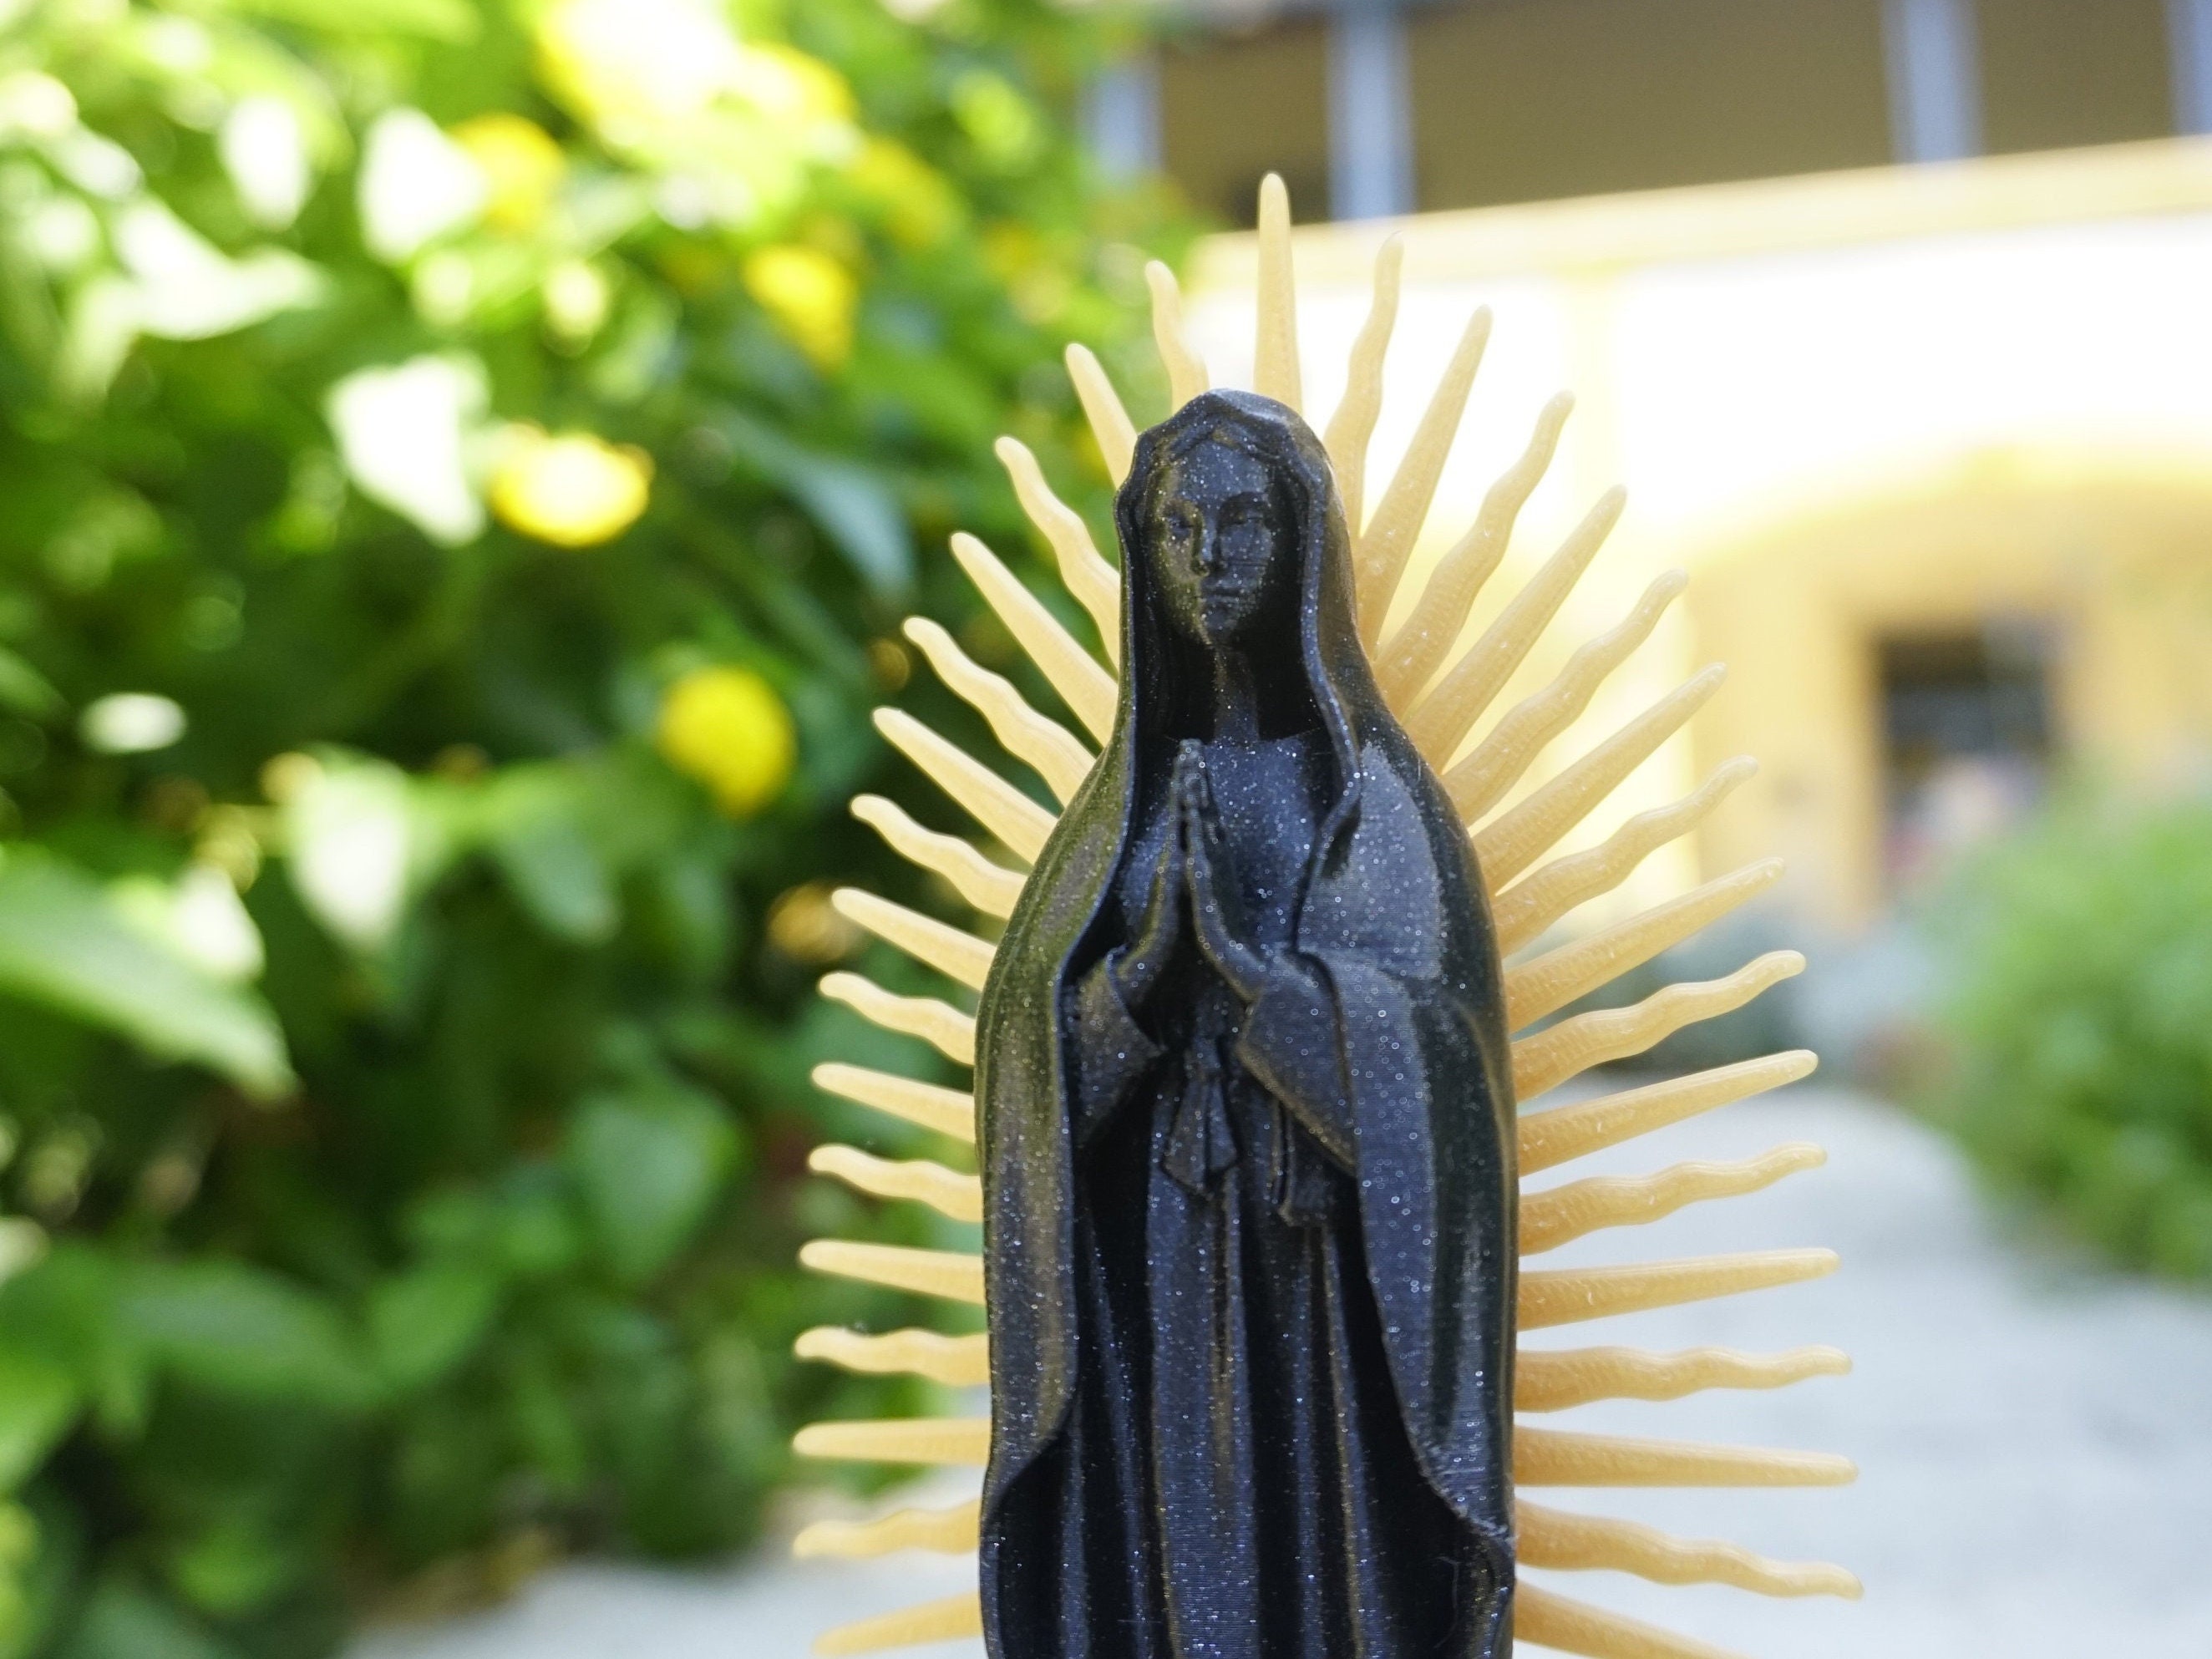 606 imágenes, fotos de stock, objetos en 3D y vectores sobre Virgen  guadalupe vector